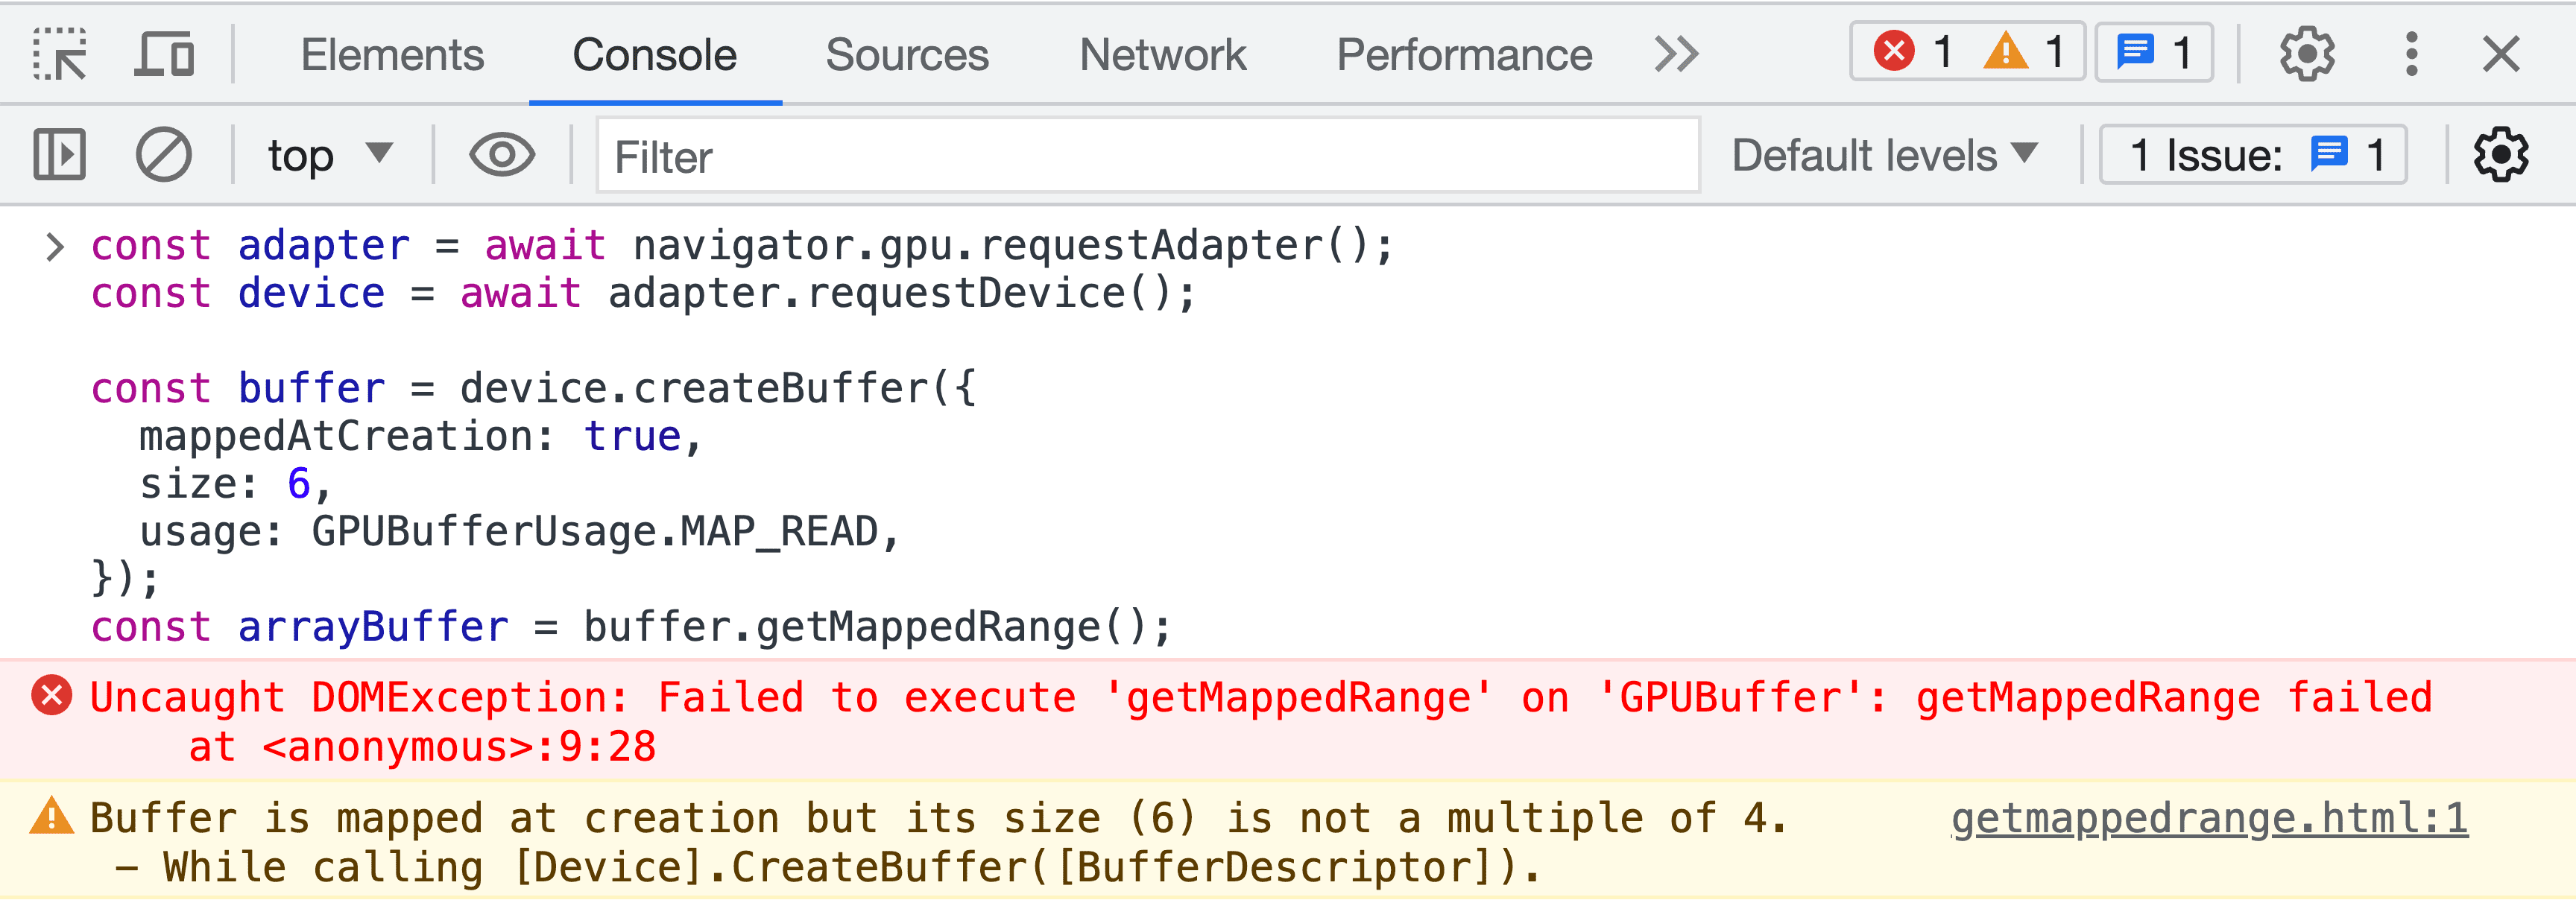 צילום מסך של לוח JavaScript של כלי פיתוח, הכולל הודעת שגיאה של אימות מאגר נתונים זמני.